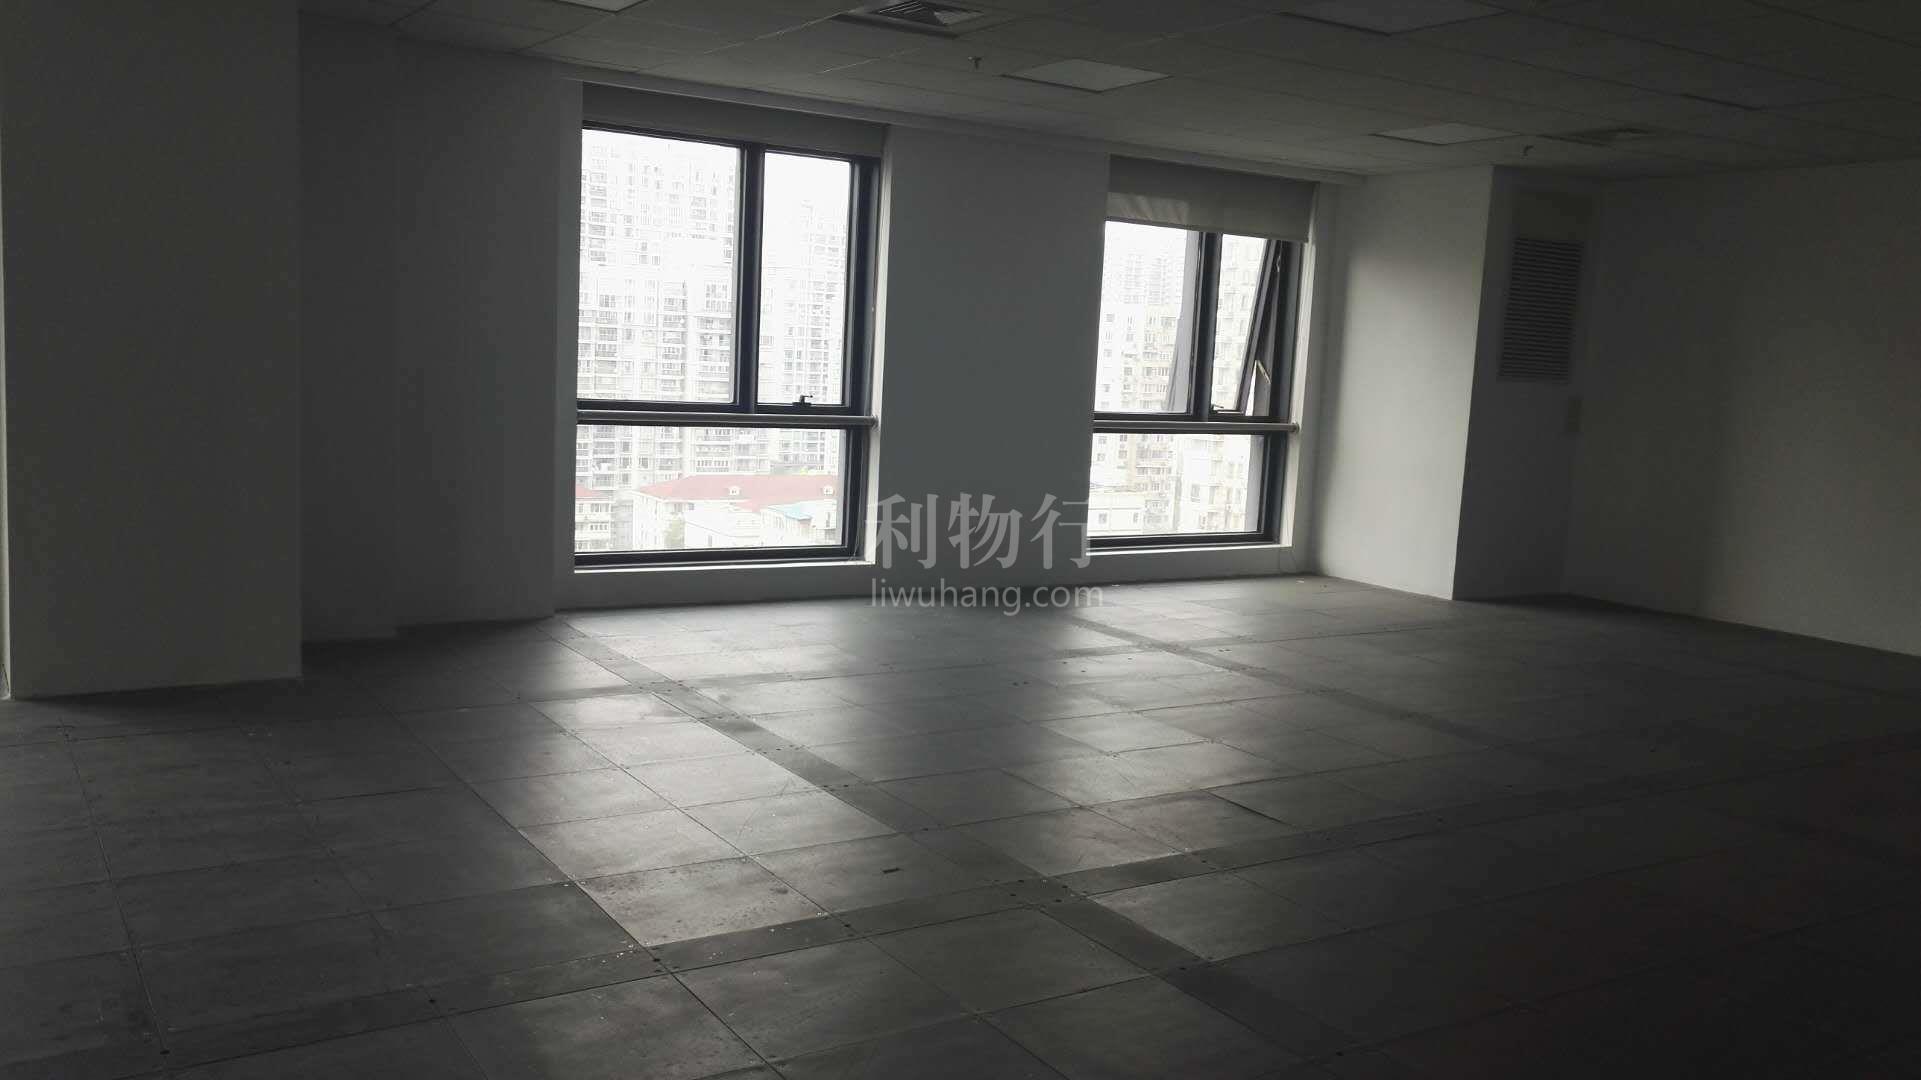 光启文化广场写字楼377m2办公室5.00元/m2/天 简单装修